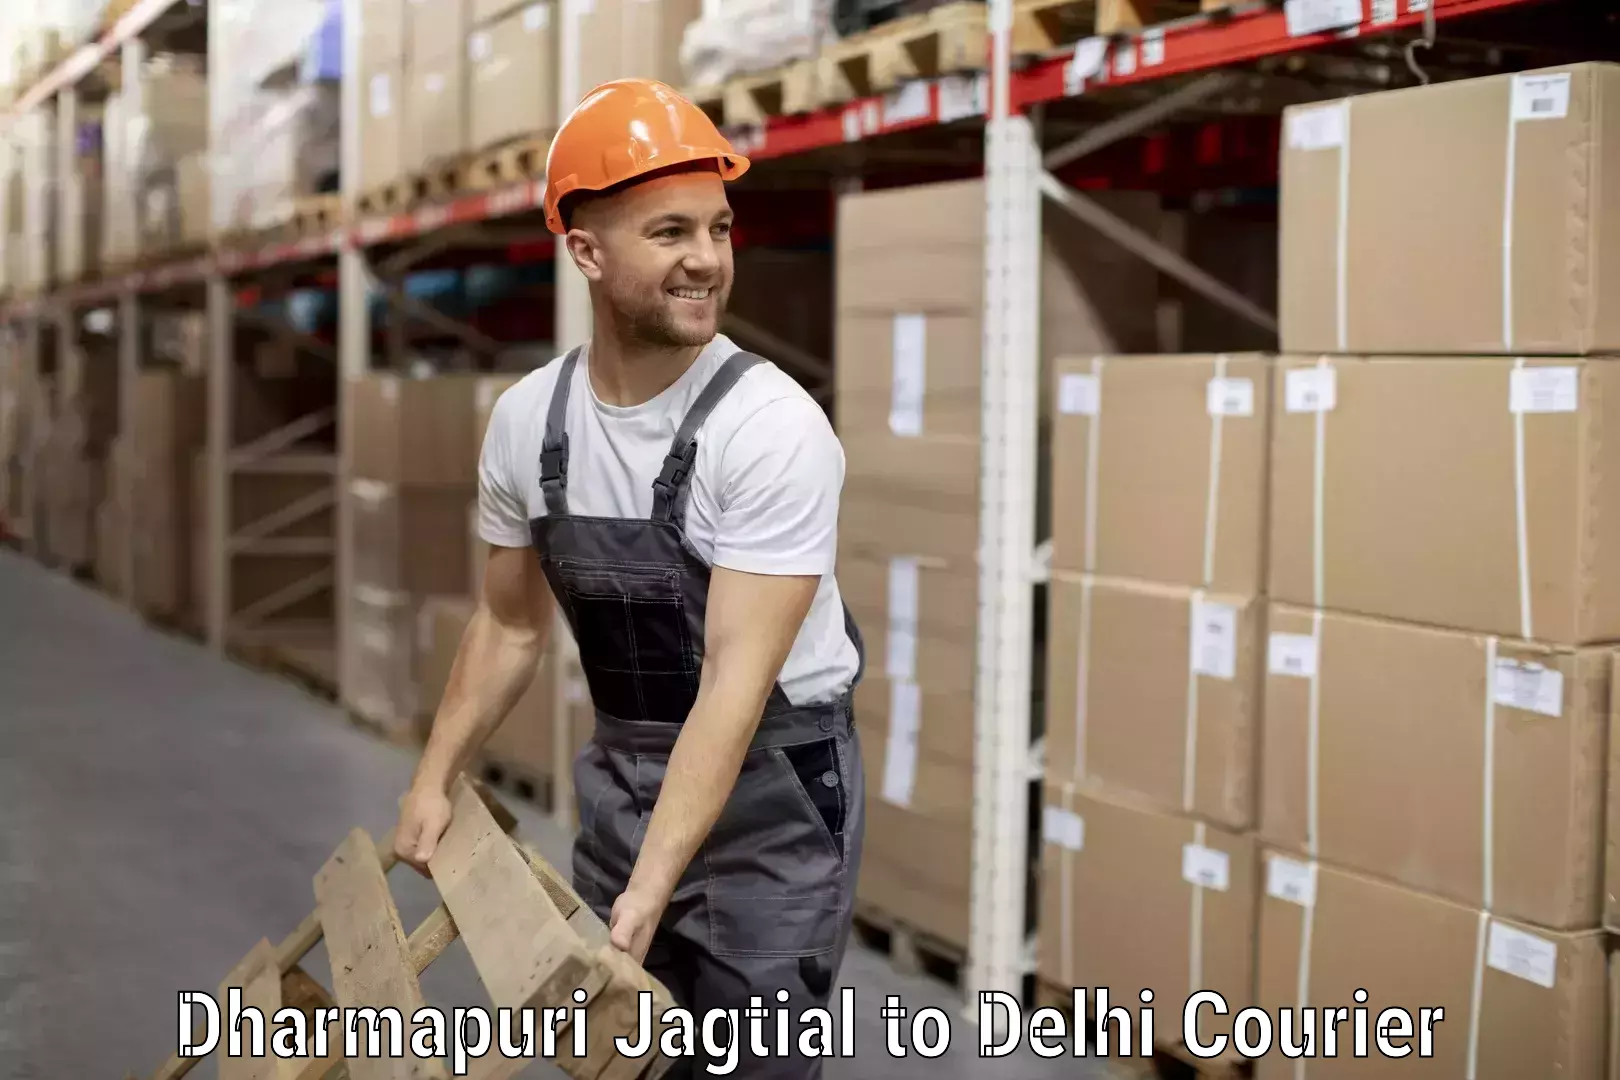 Baggage courier solutions Dharmapuri Jagtial to Delhi